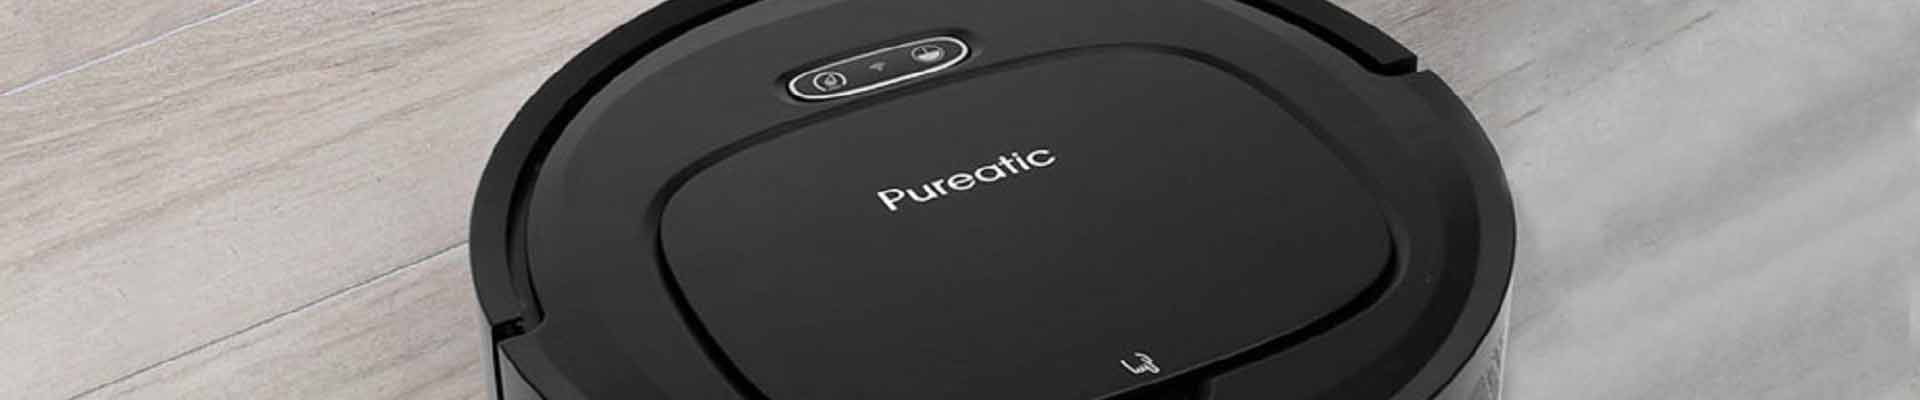 Pureatic-V2S-Robot-Vacuum